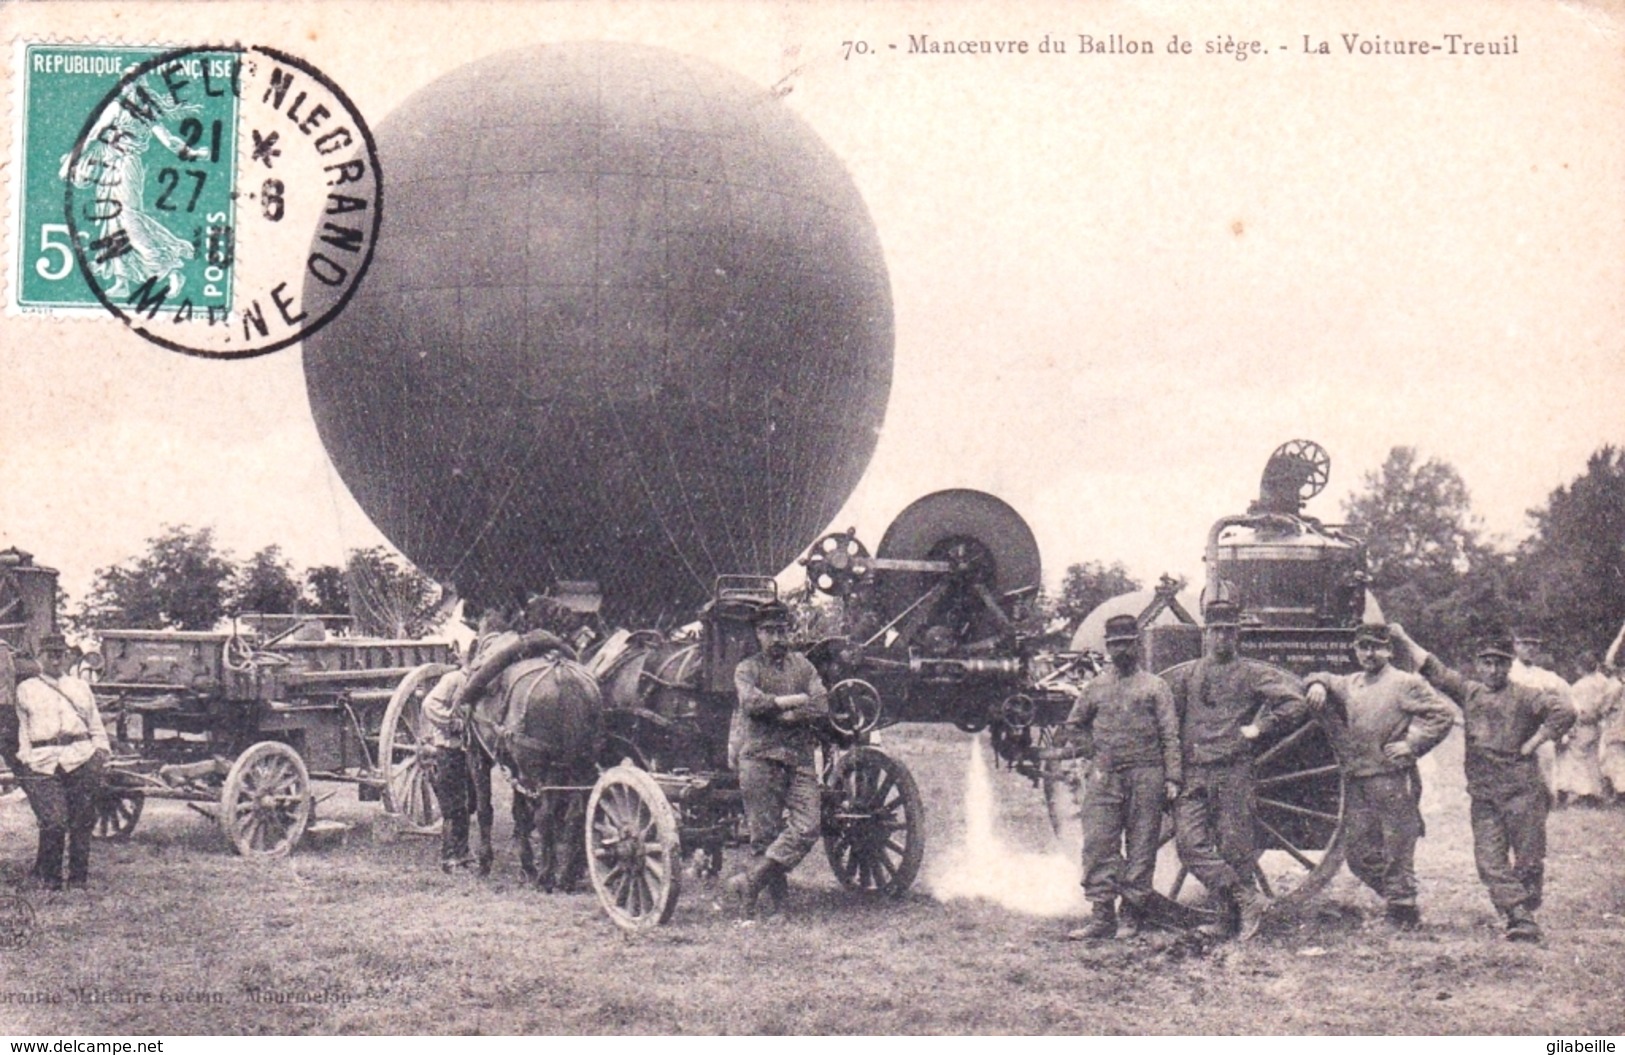 51 - Camp De CHALONS - MOURMELON - Manoeuvre Du Ballon De Siege - La Voiture Treuil - Aviation - Dirigeable - Camp De Châlons - Mourmelon